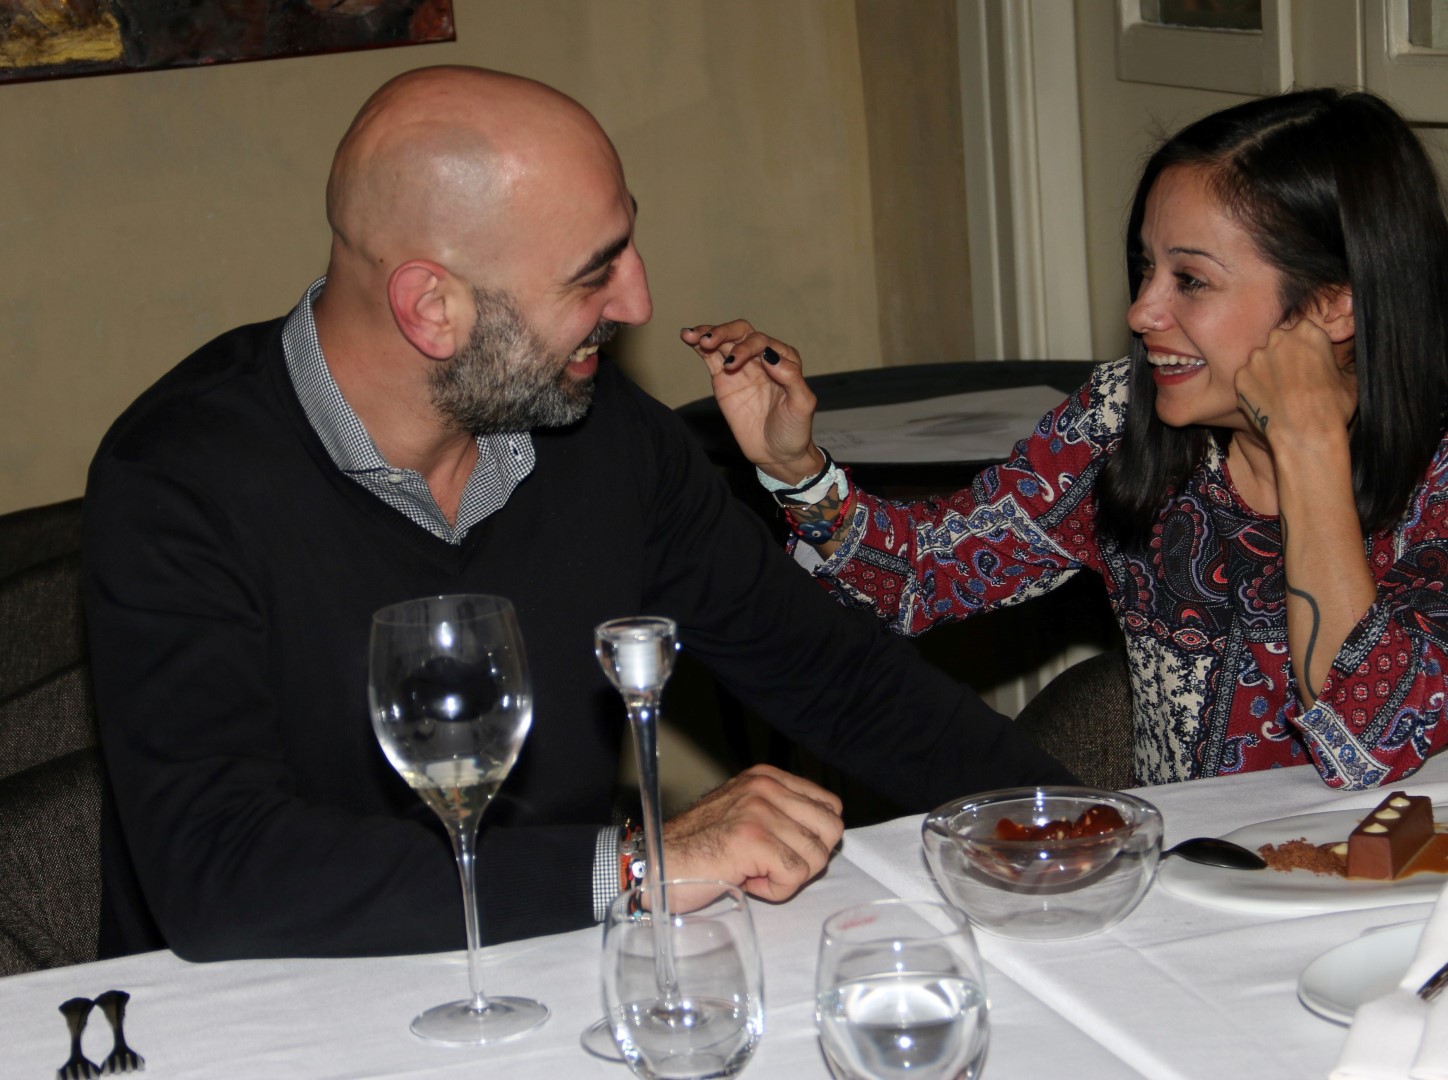 Η Κατερίνα Τσάβαλου είναι ερωτευμένη! Ρομαντικό δείπνο με τον σύντροφό της! [pics]